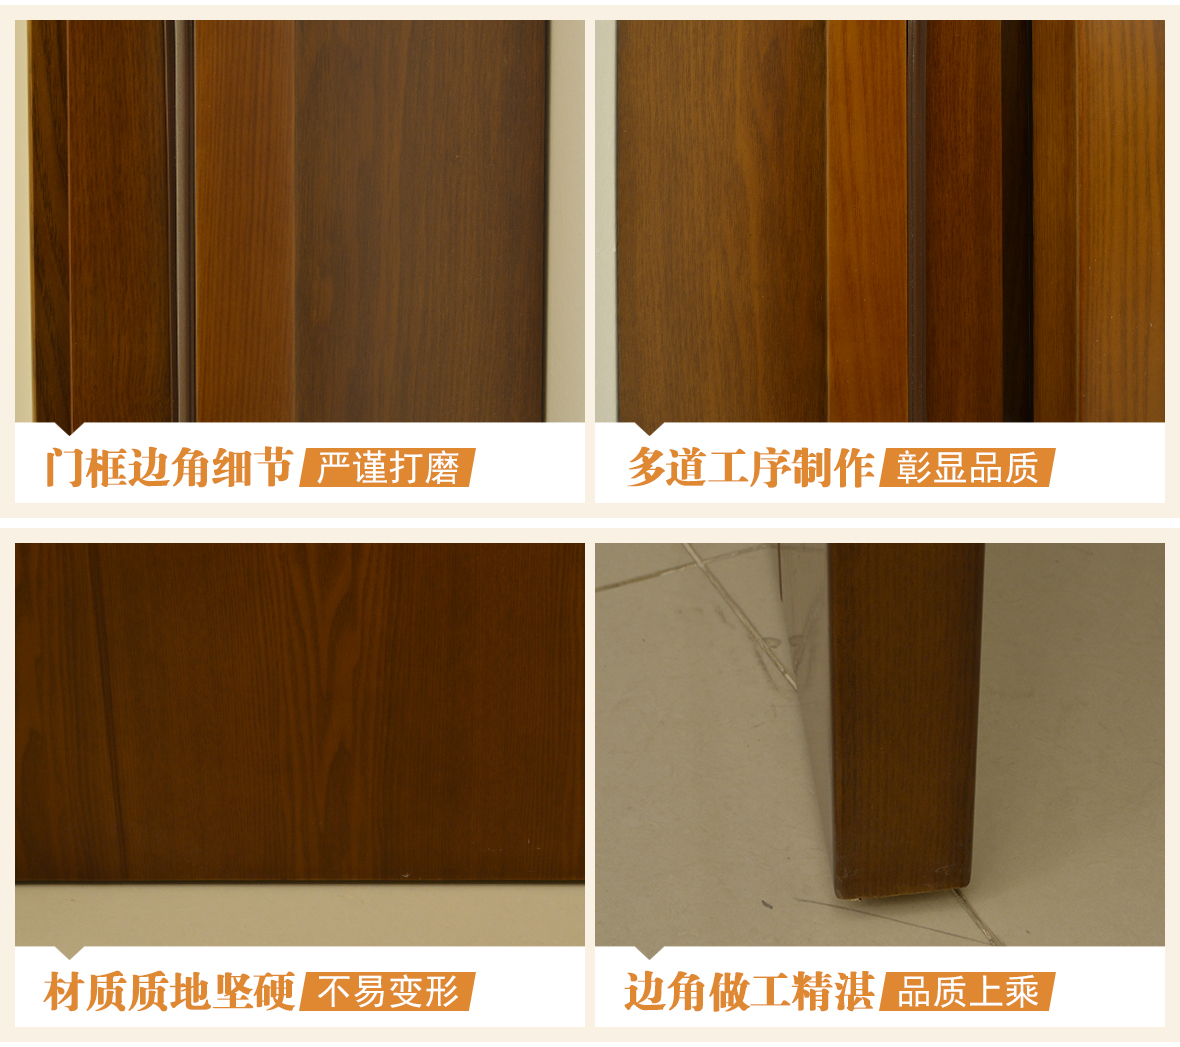 龙鼎天著 LA-014型号实木复合门 环保材质室内门 木门专属定制 细节